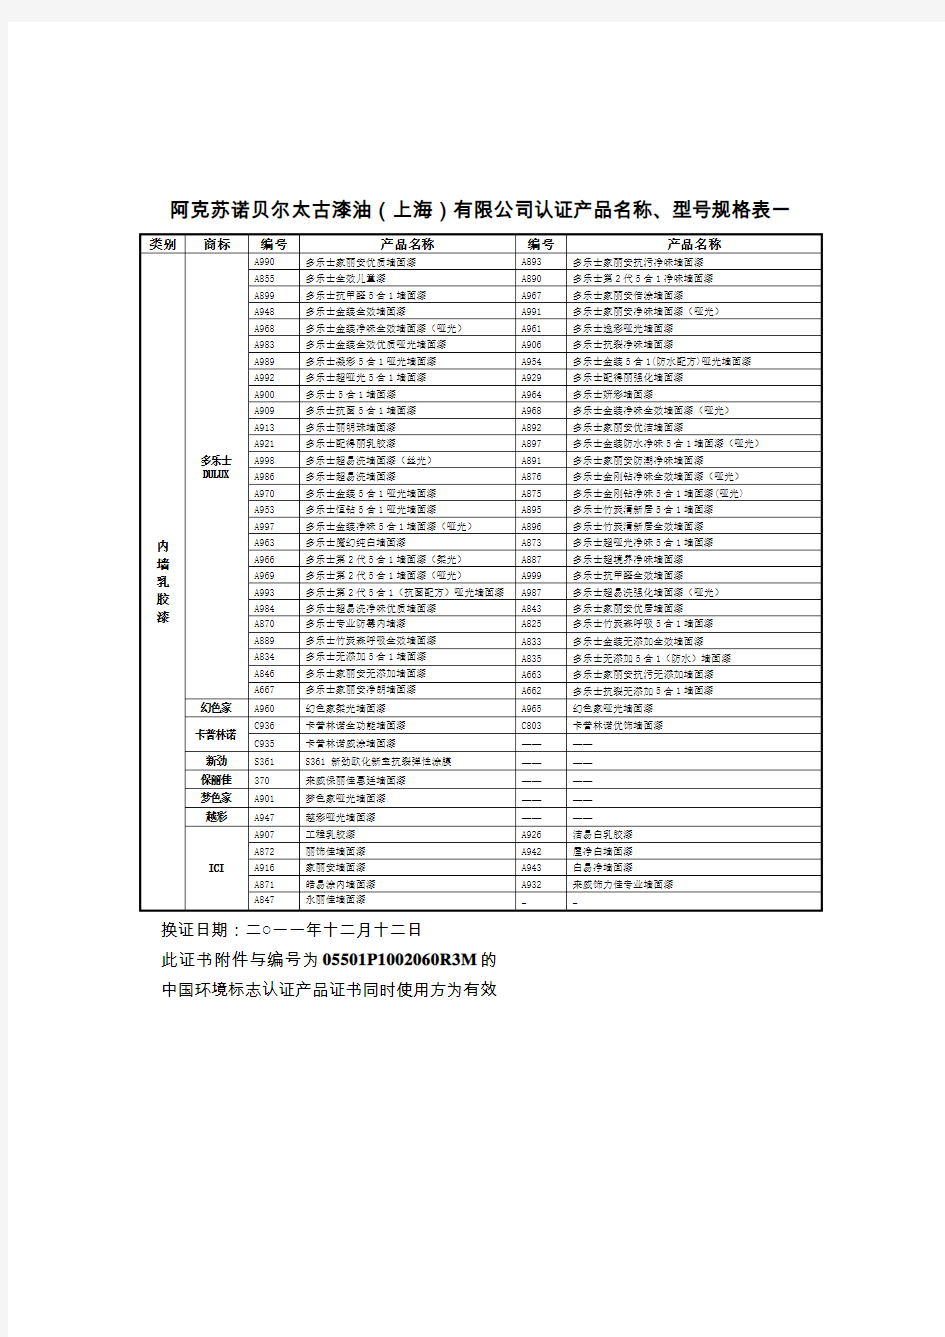 阿克苏诺贝尔太古漆油(上海)有限公司认证产品名称、型号规格表一